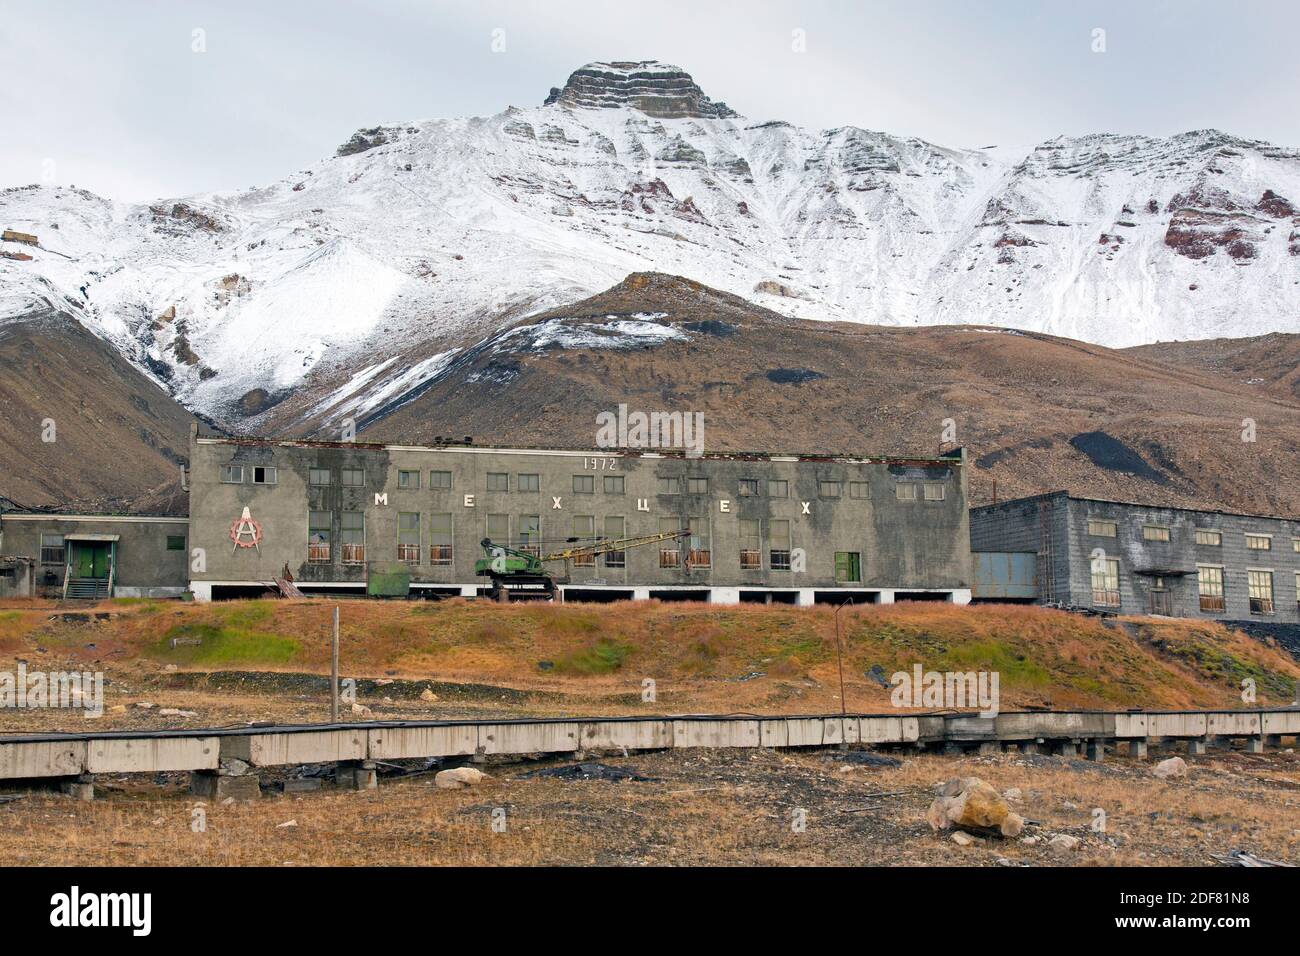 Edifici e la fabbrica di derelict a Pyramiden, abbandonato insediamento sovietico di miniere di carbone su Svalbard / Spitsbergen Foto Stock